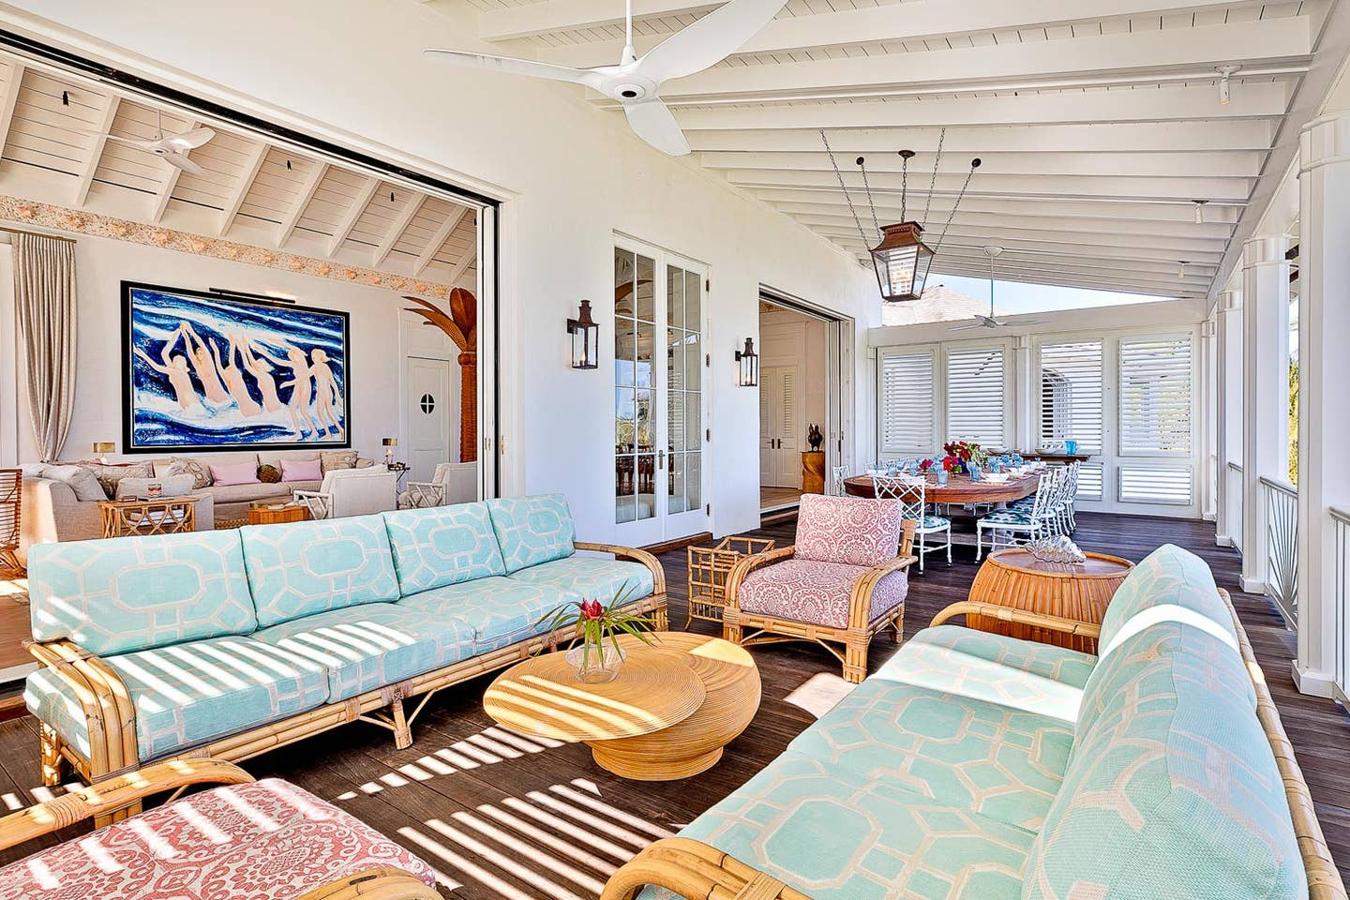 Obras de arte y muebles de coleccionista- La lujosa mansión de Kylie Jenner en Bahamas. Cada estancia posee una decoración diferente, pero todas coinciden en el buen gusto y un estilo que combina la vanguardia con el clasicismo.